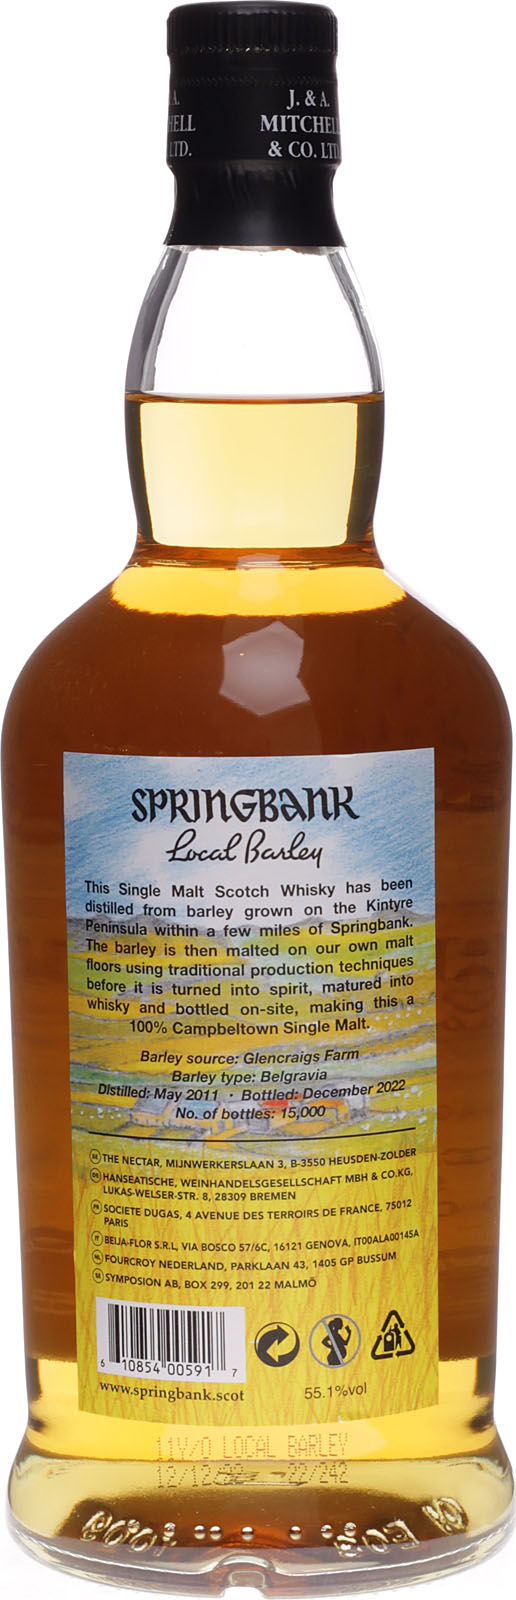 Springbank Local Barley Whisky 11 Jahre mit 0,7 Liter Rarität kaufen.